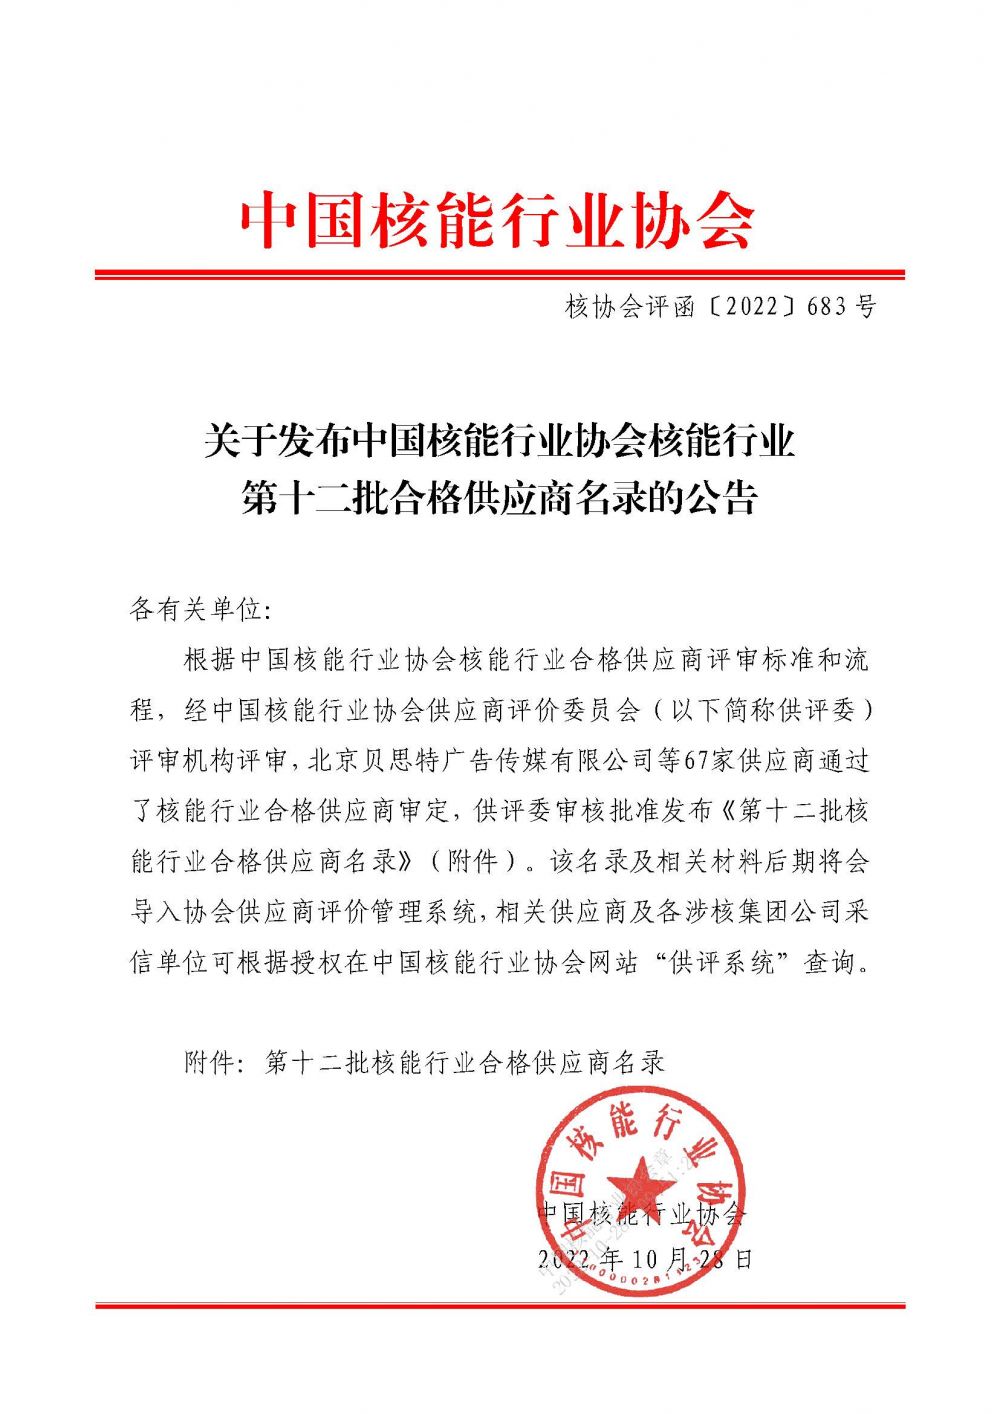 关于发布中国核能行业协会核能行业第十二批合格供应商名录的公告_页面_1.jpg